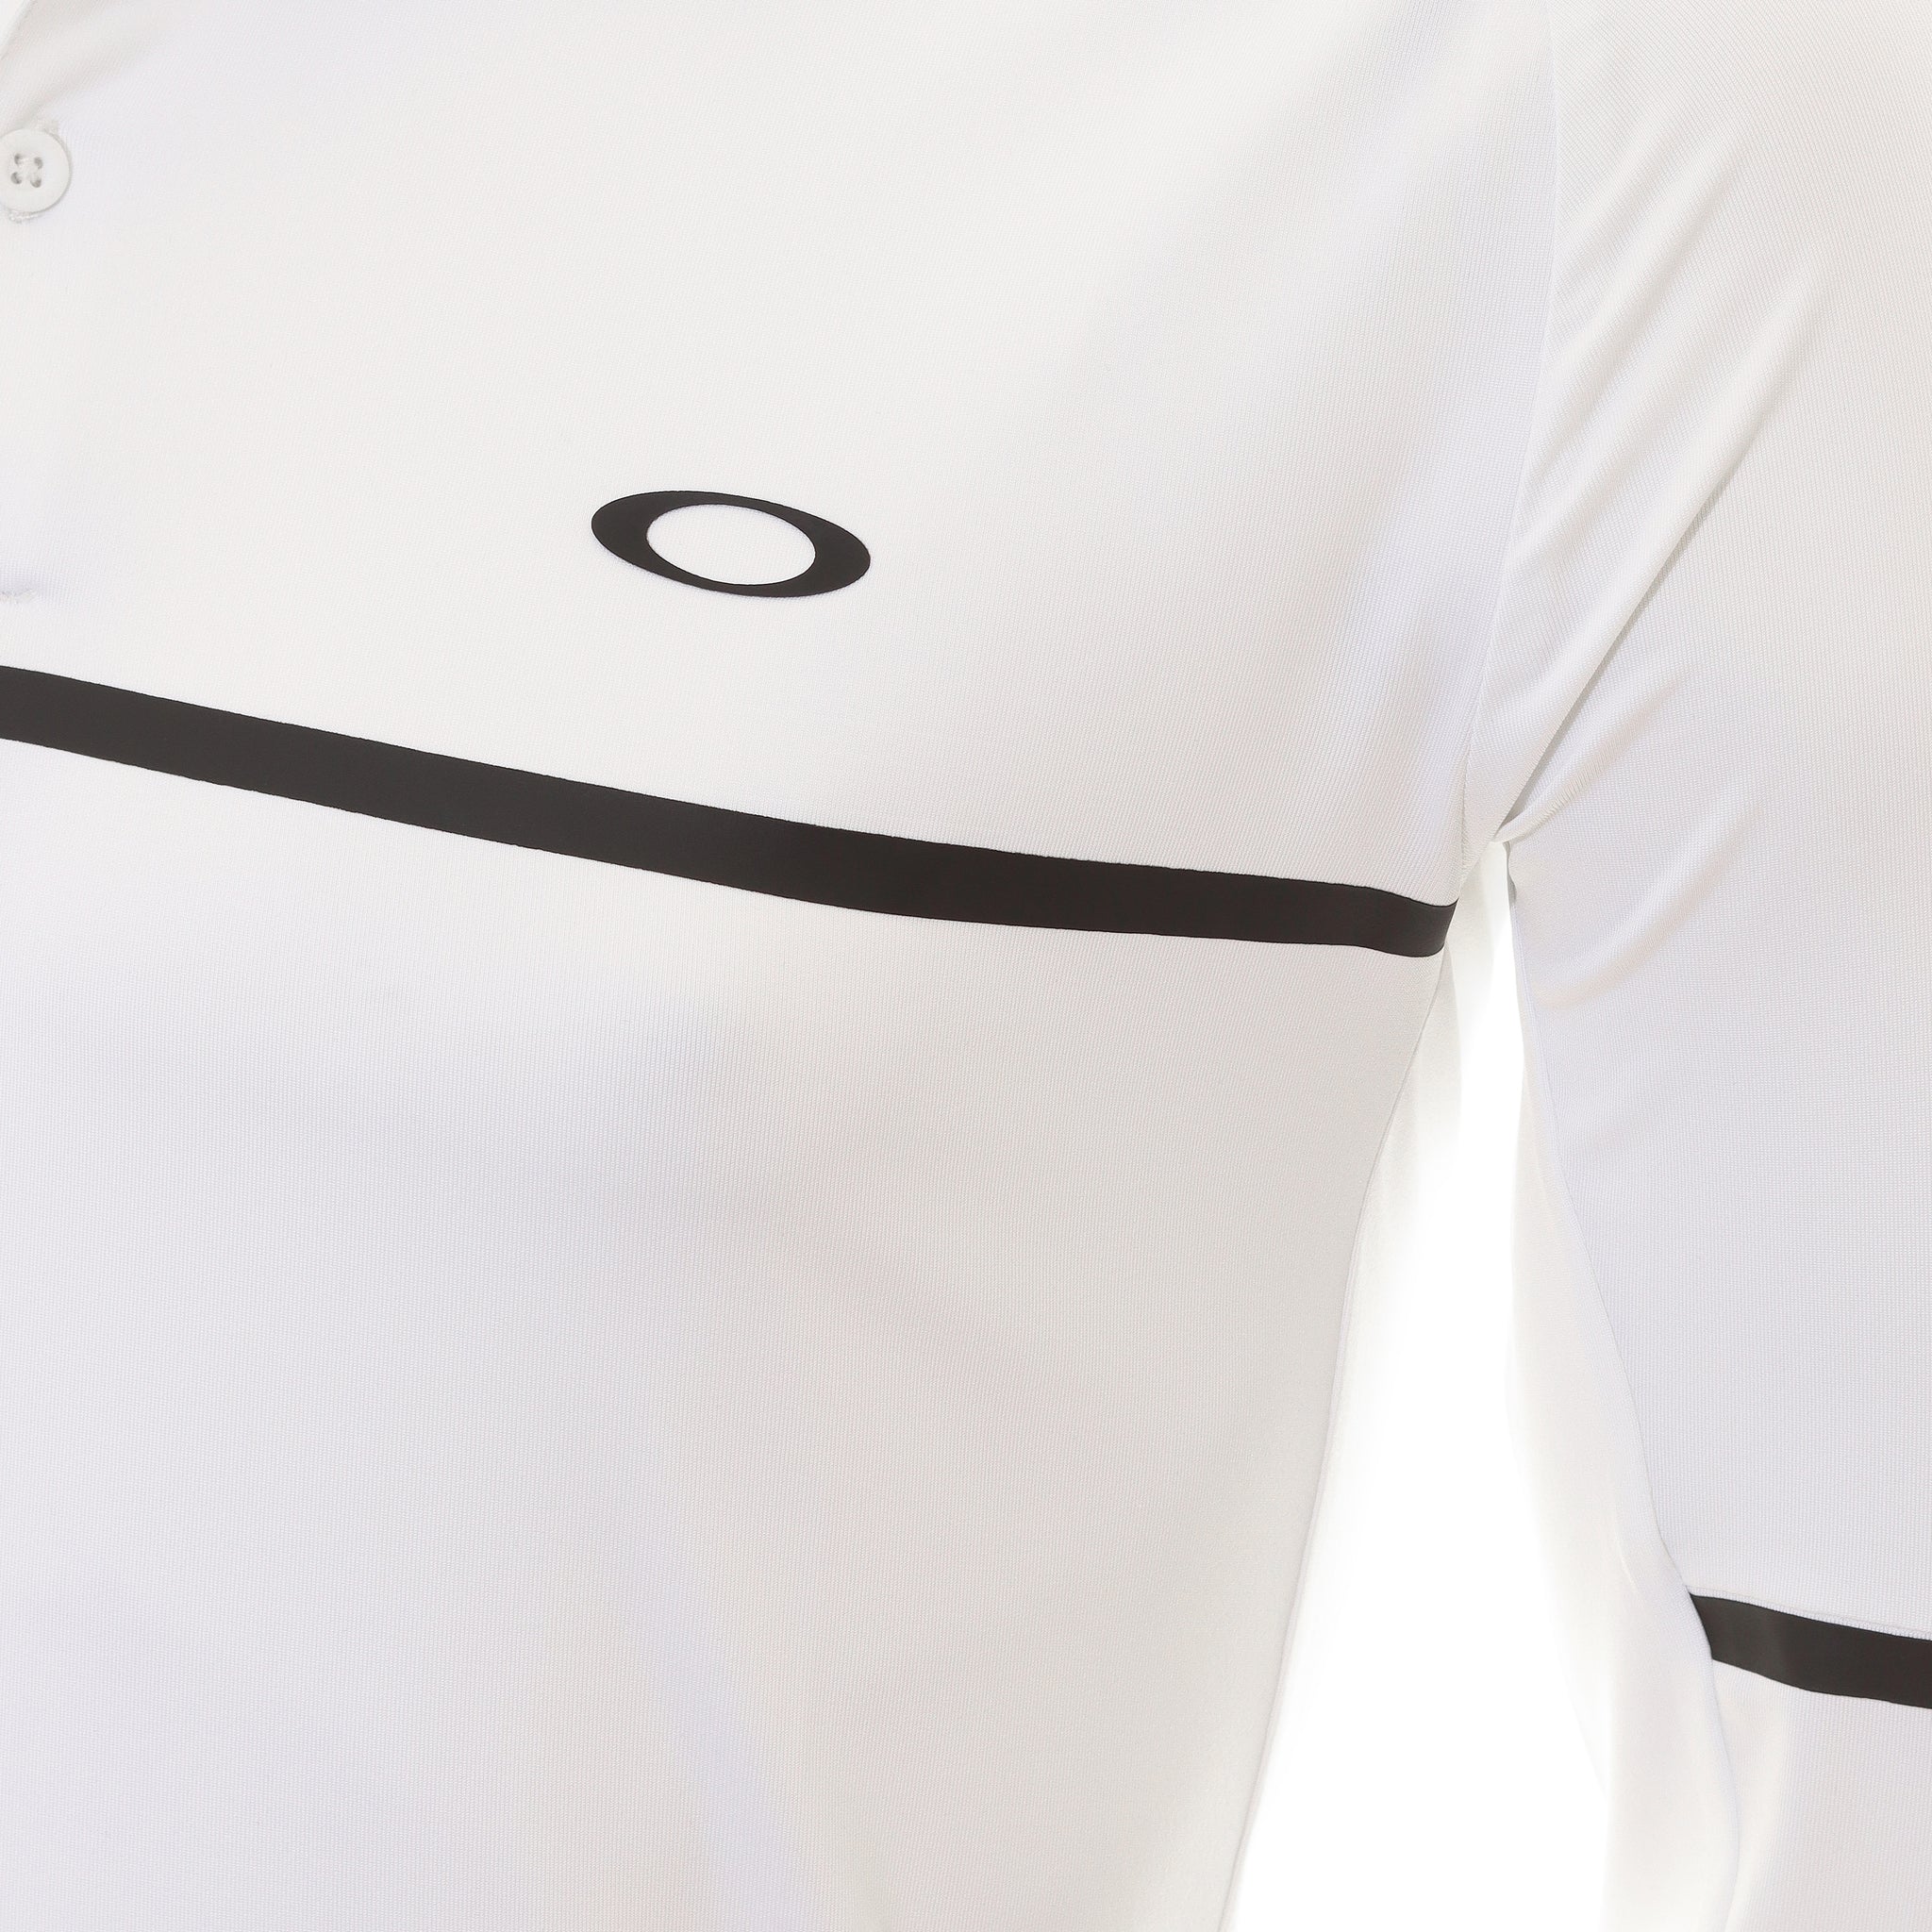 oakley-golf-sleeve-tech-ls-shirt-1-404356-white-12a-function18